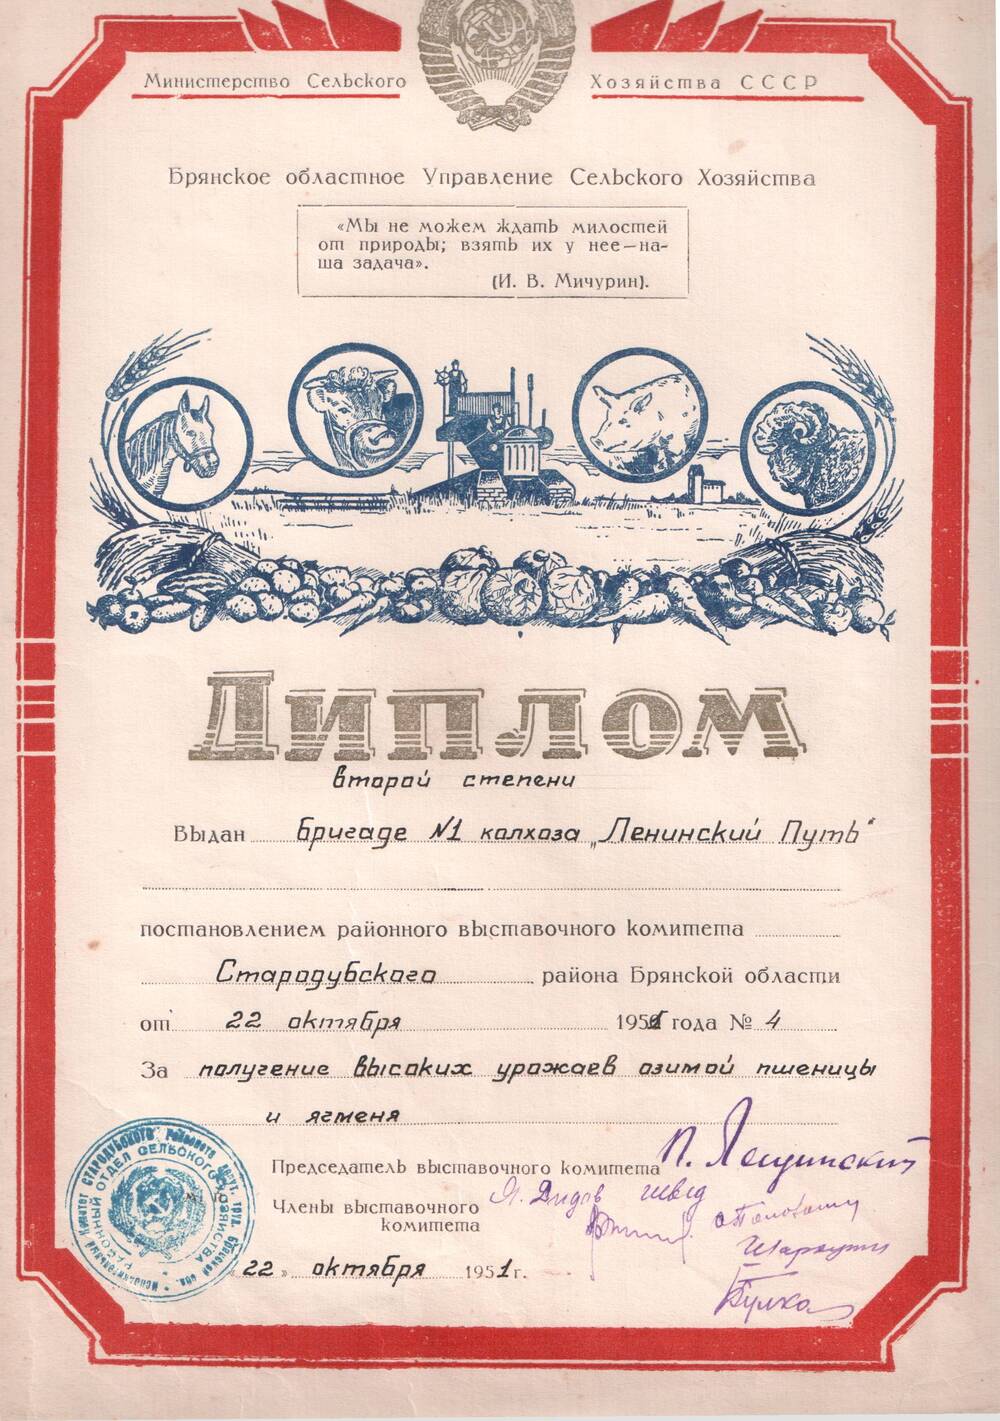 Диплом 2 степени от 22.10.1951 г. райвыставкома  за высокие урожаи колхозу «Ленинский путь» Стародубского района